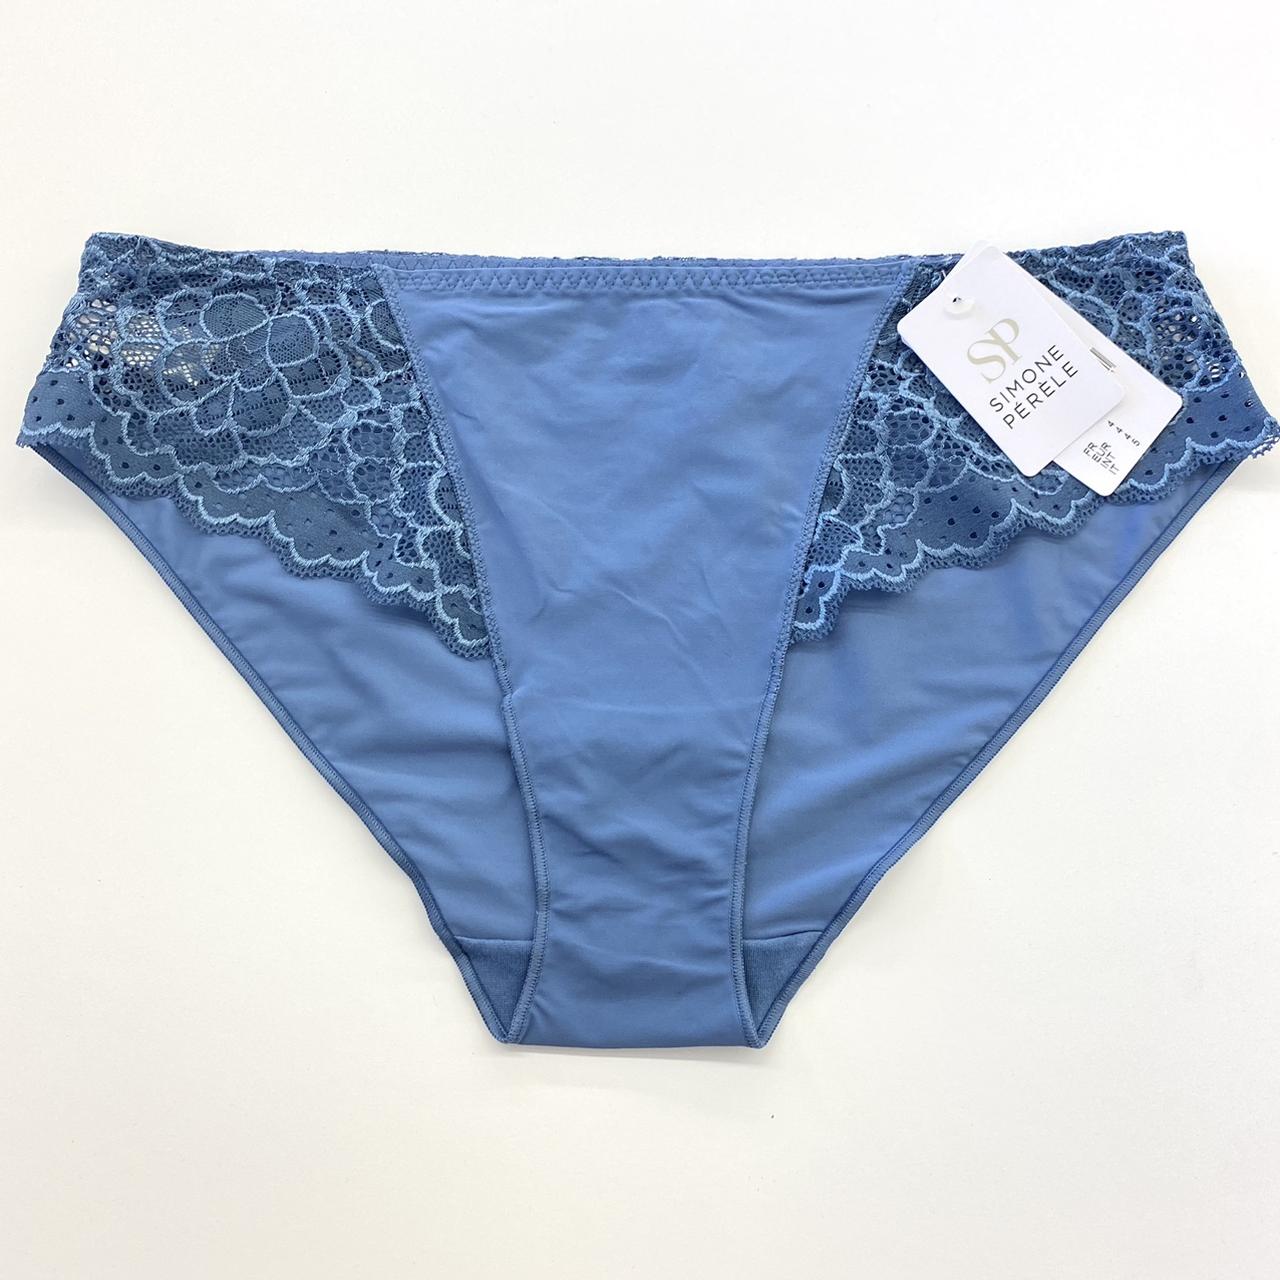 Simone Perele Women's Blue Panties | Depop